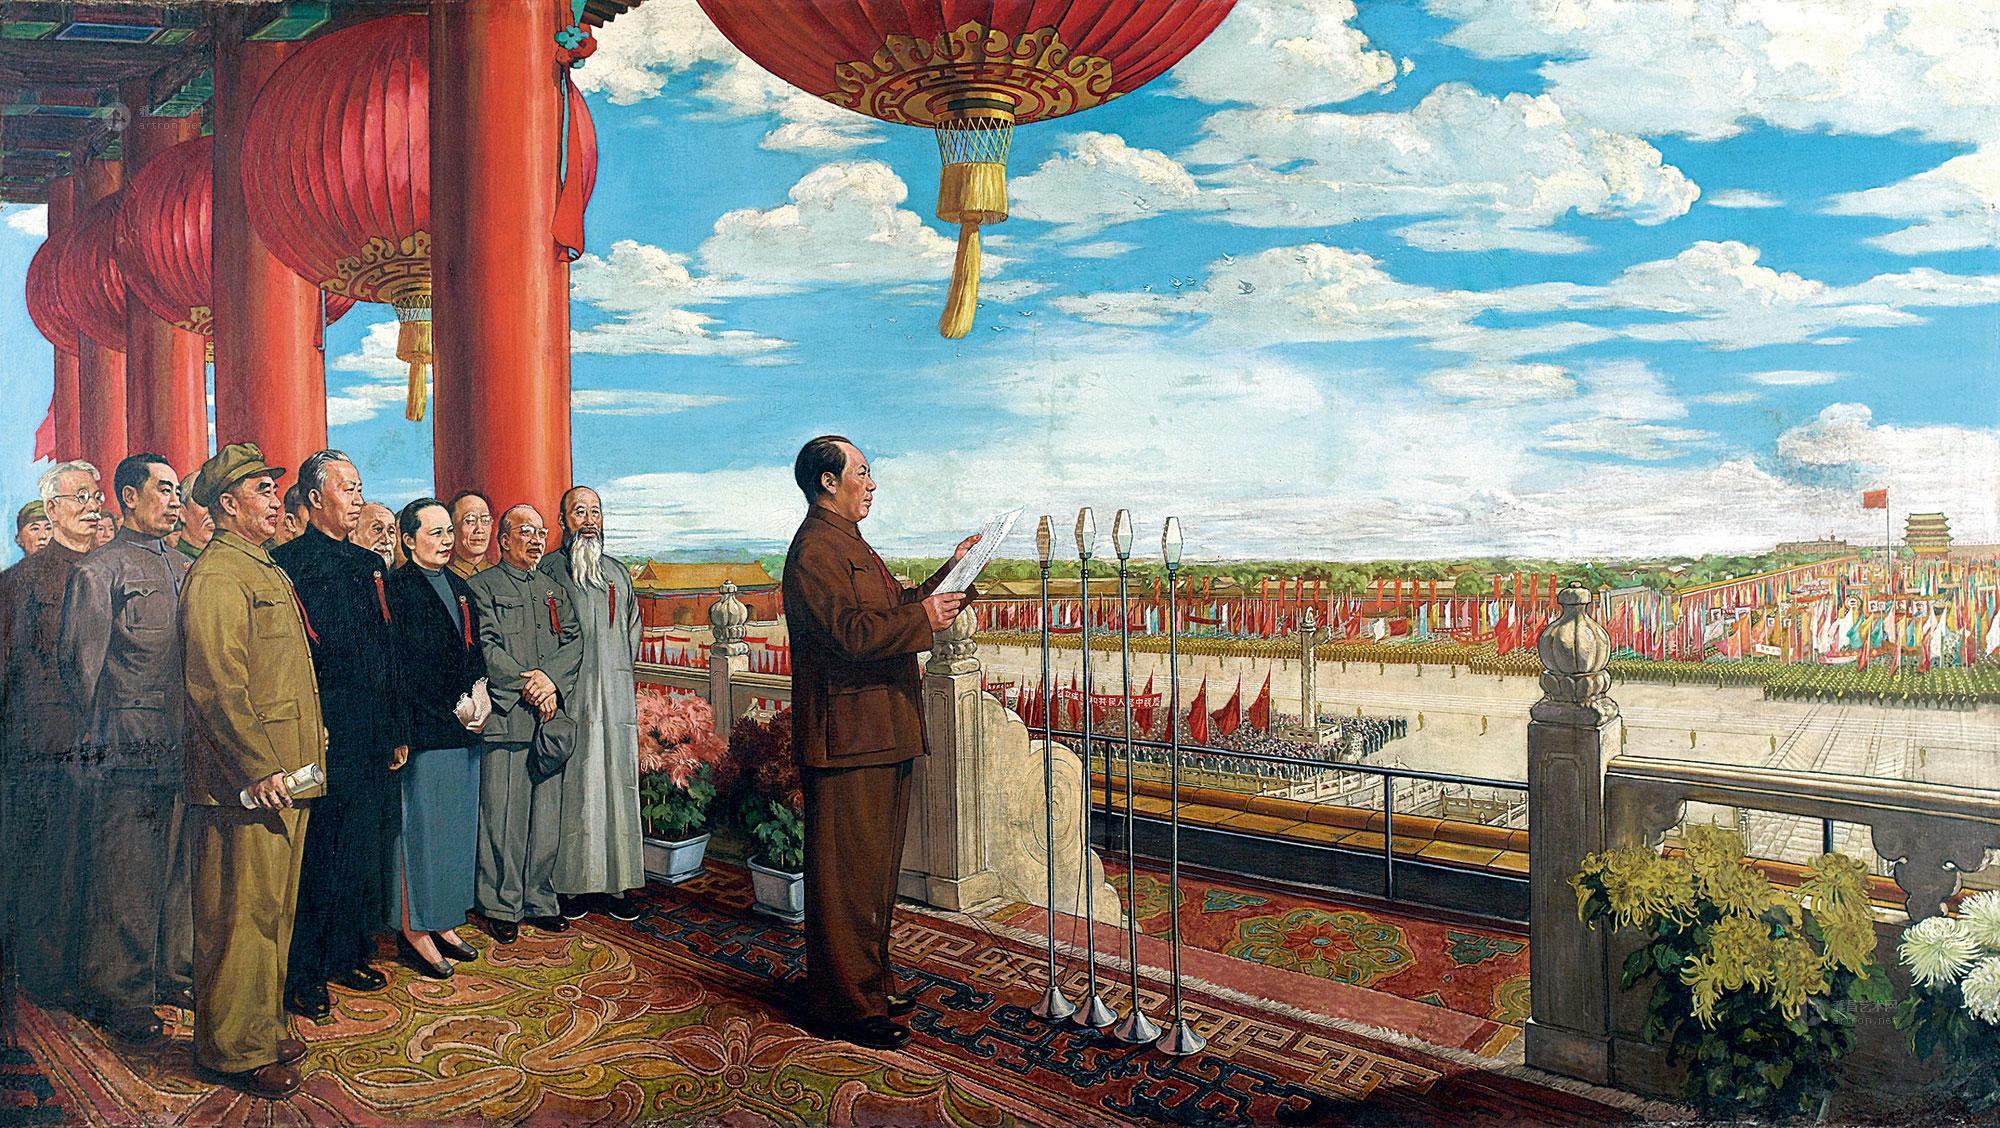 外国领导人祝贺中华人民共和国成立70周年 - Chinadaily.com.cn